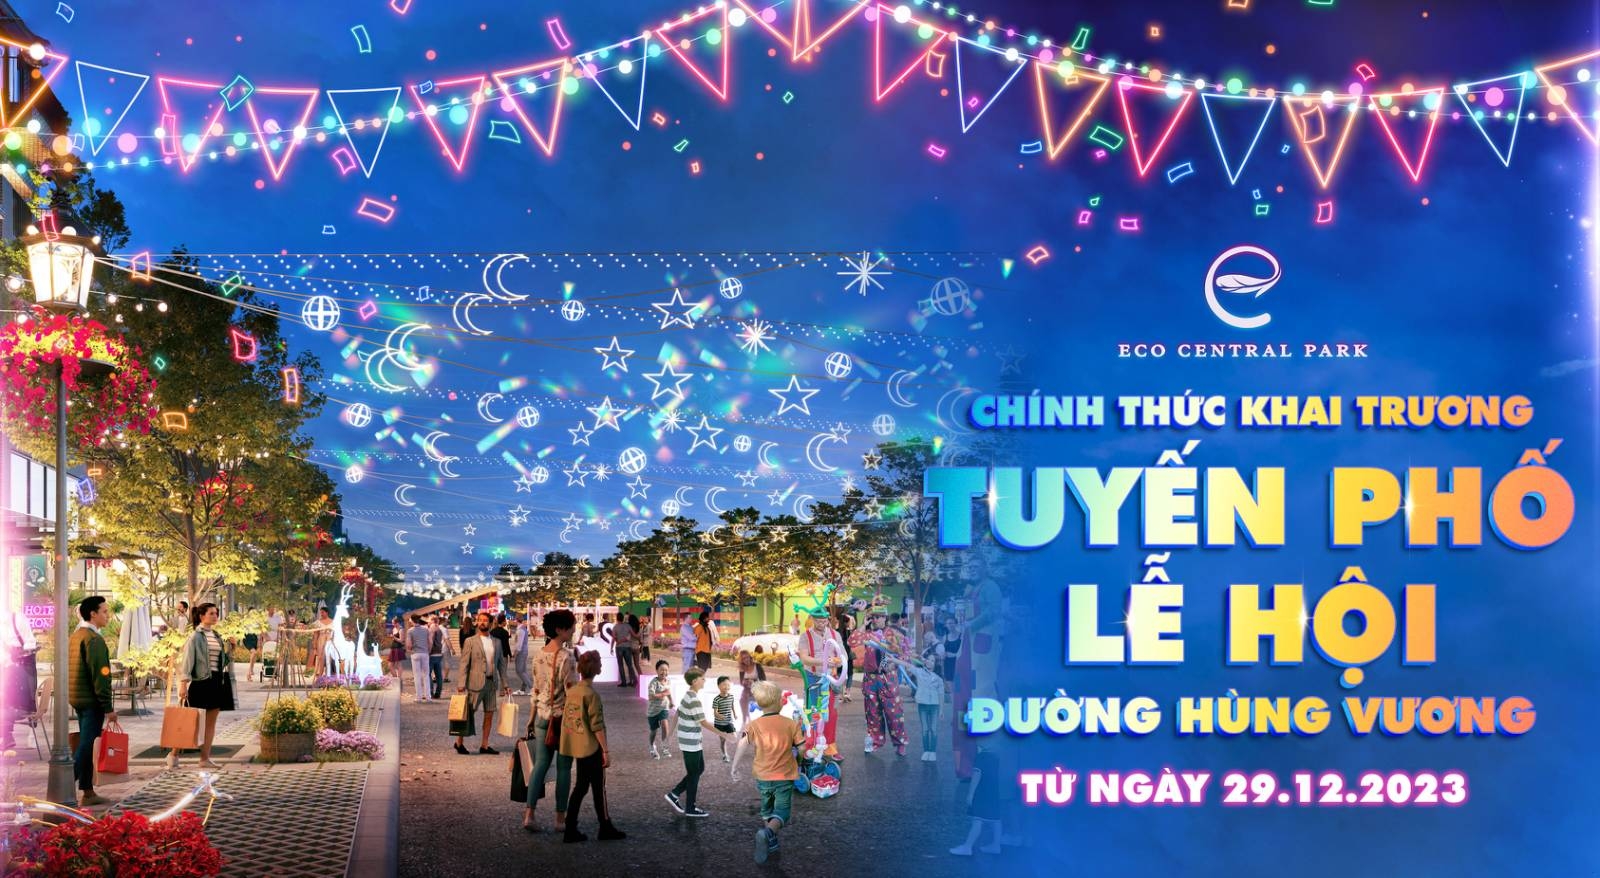 Nghệ An: Sắp khai trương tuyến phố lễ hội- check in- ẩm thực hấp dẫn nhất thành phố Vinh